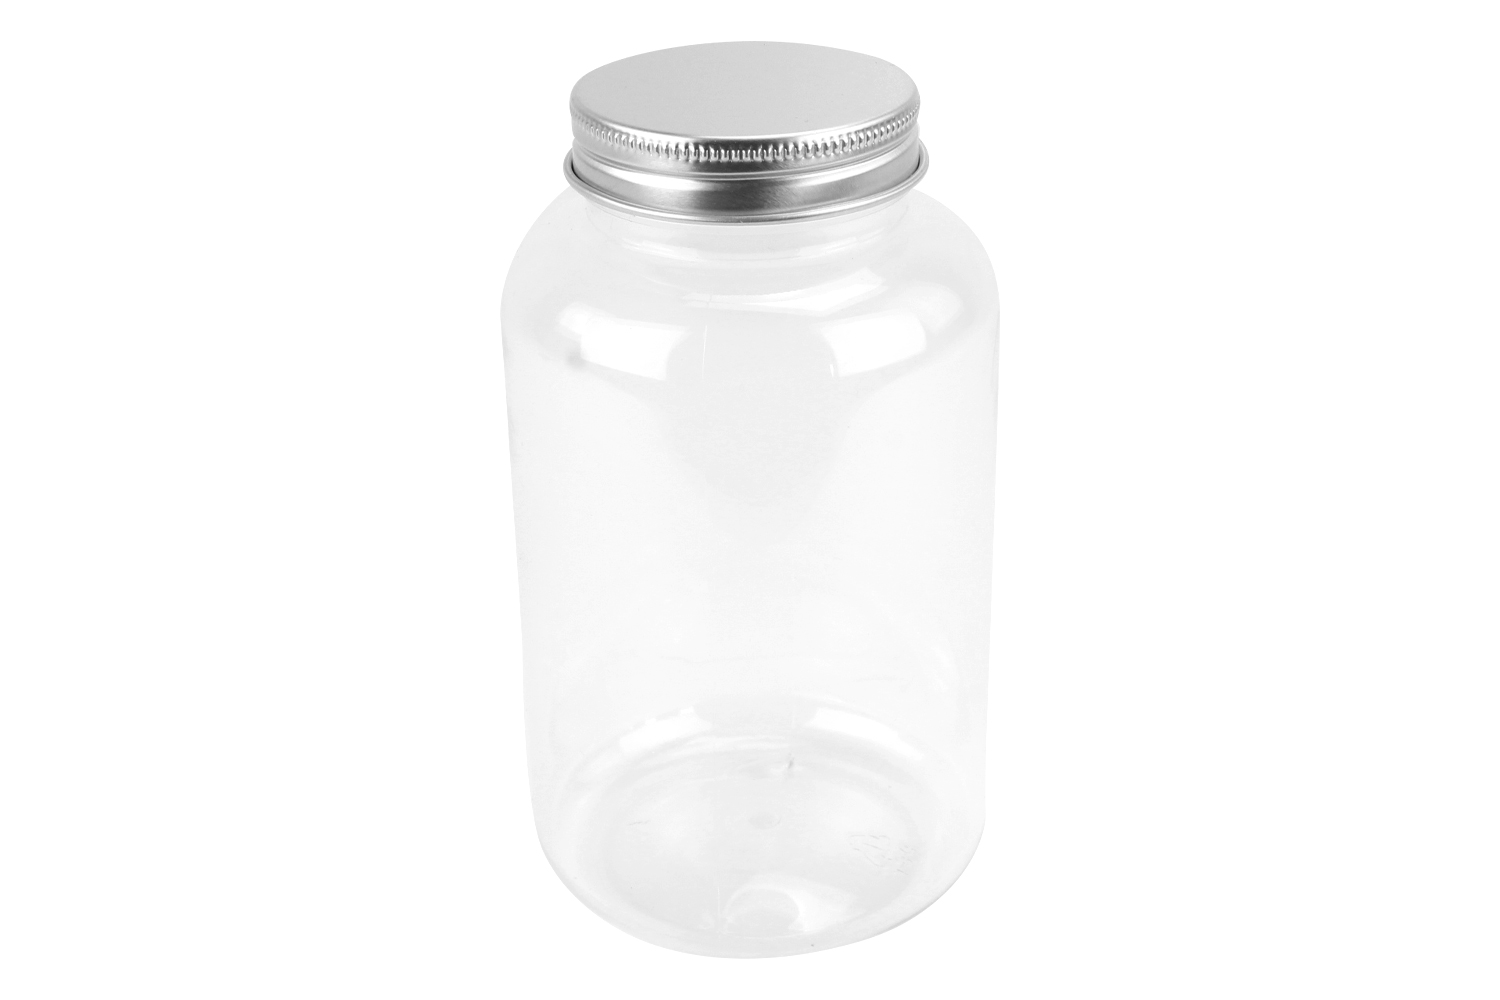 Pot plastique conique transparent 1180ml avec couvercle - Pots